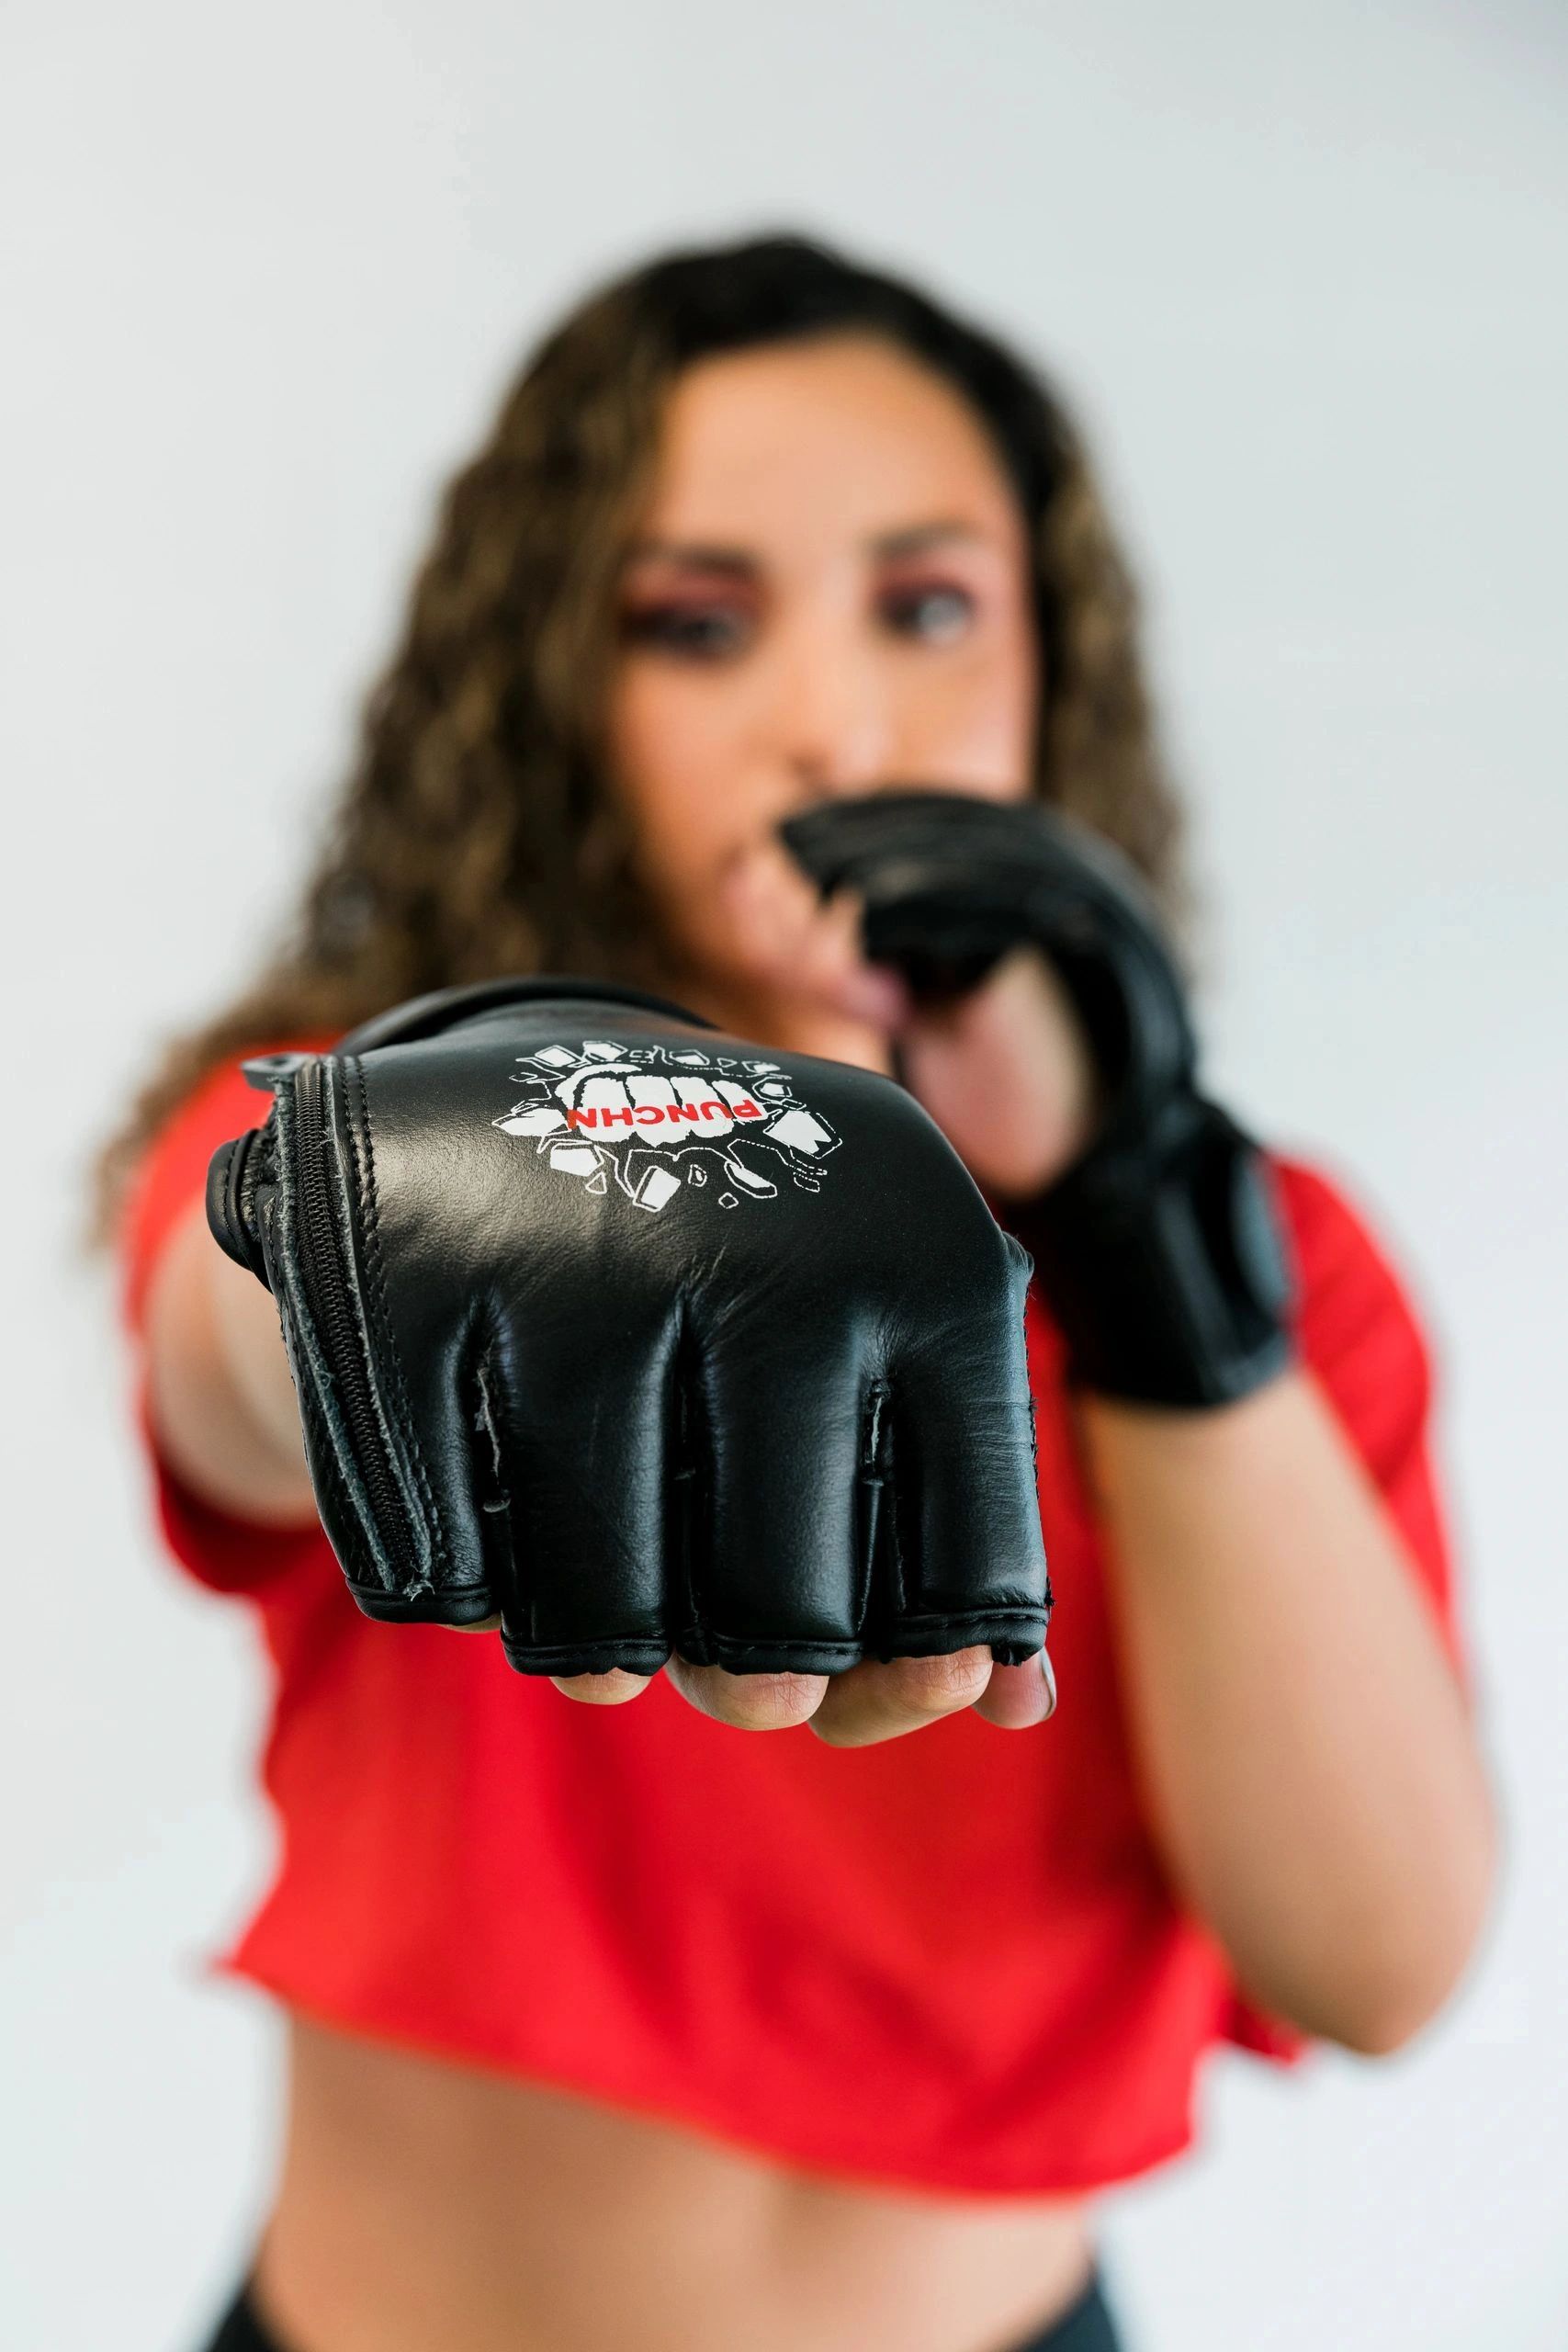 PunchN Fitness Gloves. 
-Break a Sweat in Seconds-